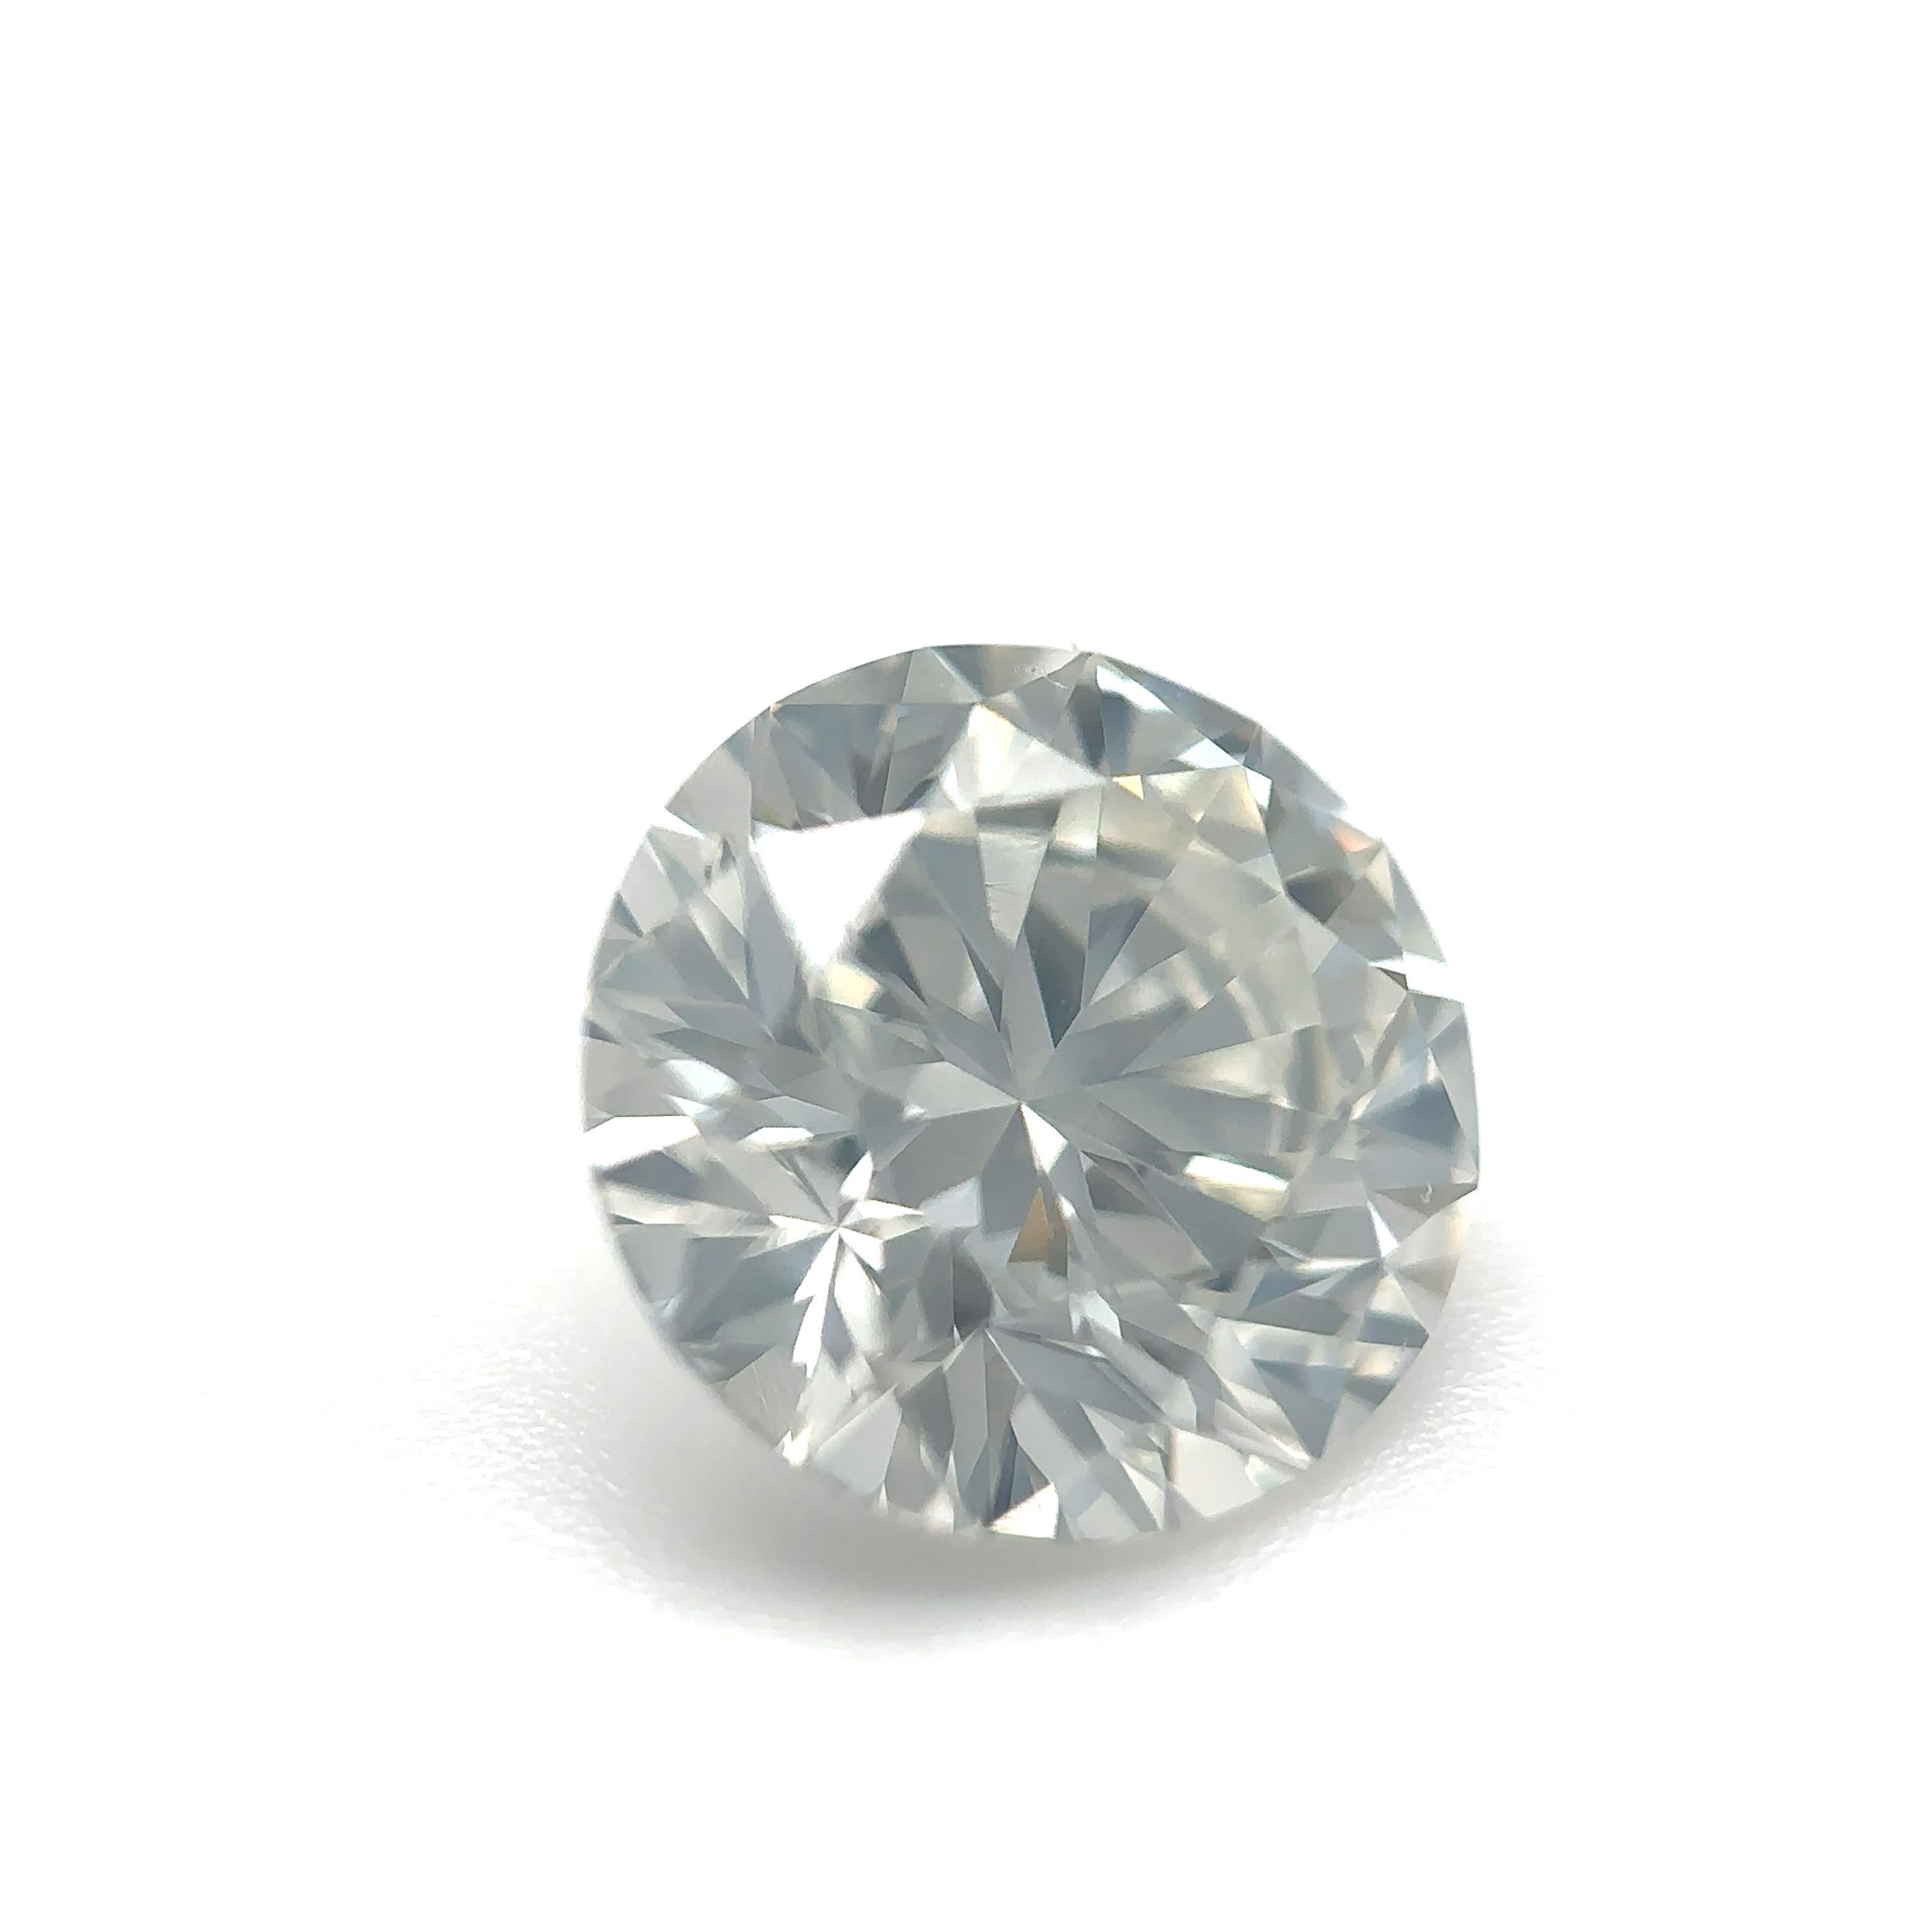 GIA Certified 1.57 Carat Round Brilliant Natural Diamond Loose Stone (Customization Option)

Couleur : H
Clarté : SI1

Idéal pour les bagues de fiançailles, les alliances, les colliers et les boucles d'oreilles en diamant. Contactez-nous pour